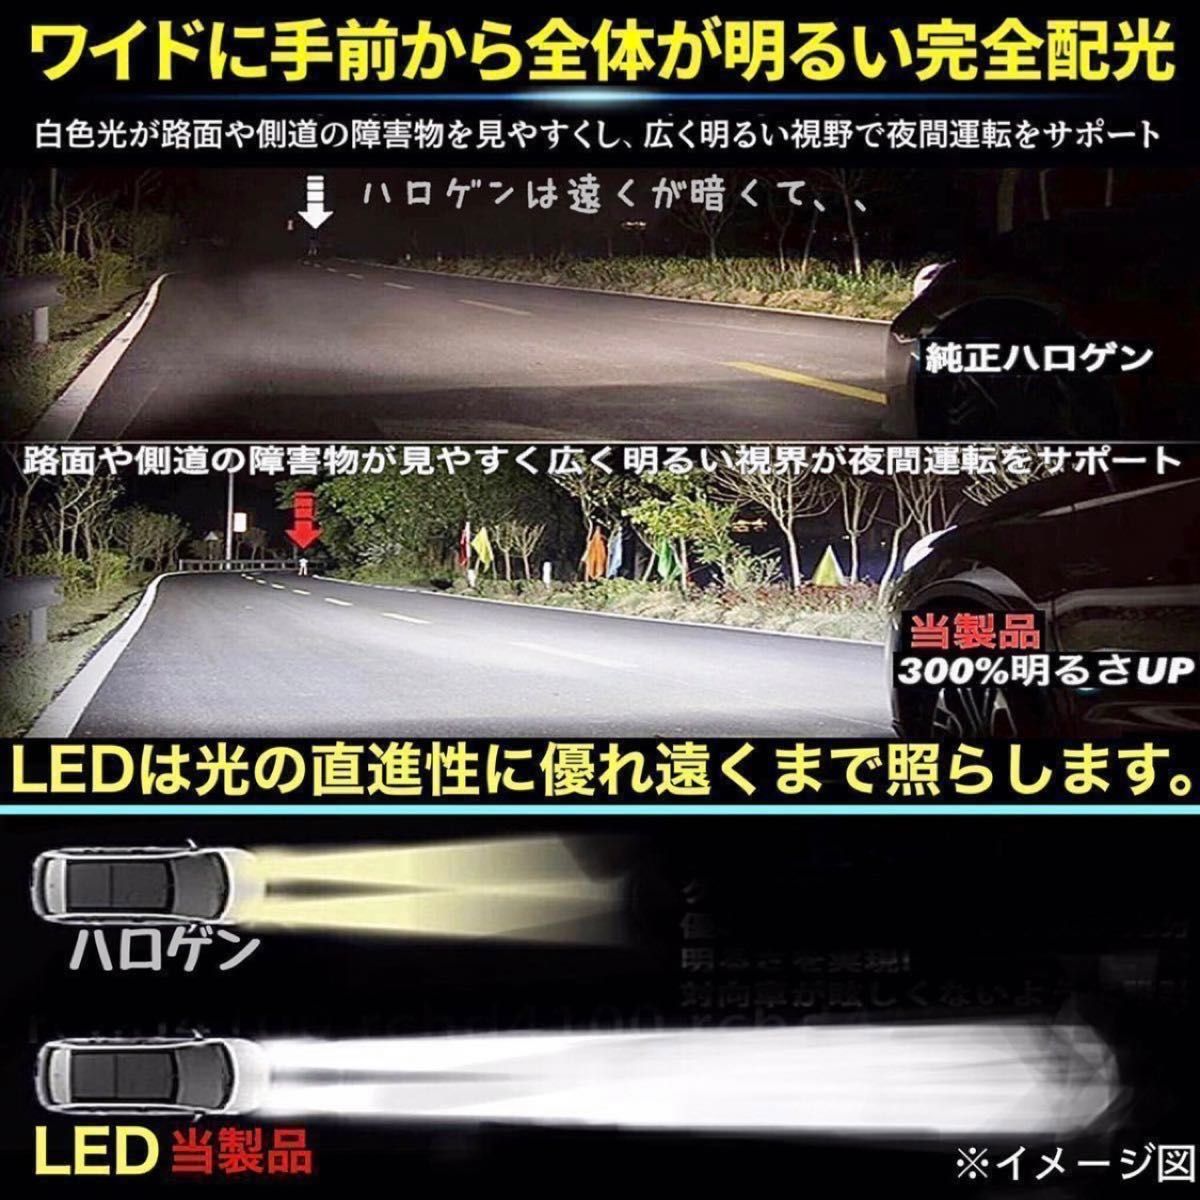 H4 led ヘッドライト Hi/Lo 16000LM 54W 12V/24V バイク用 車用 ホワイト LED バルブ #k